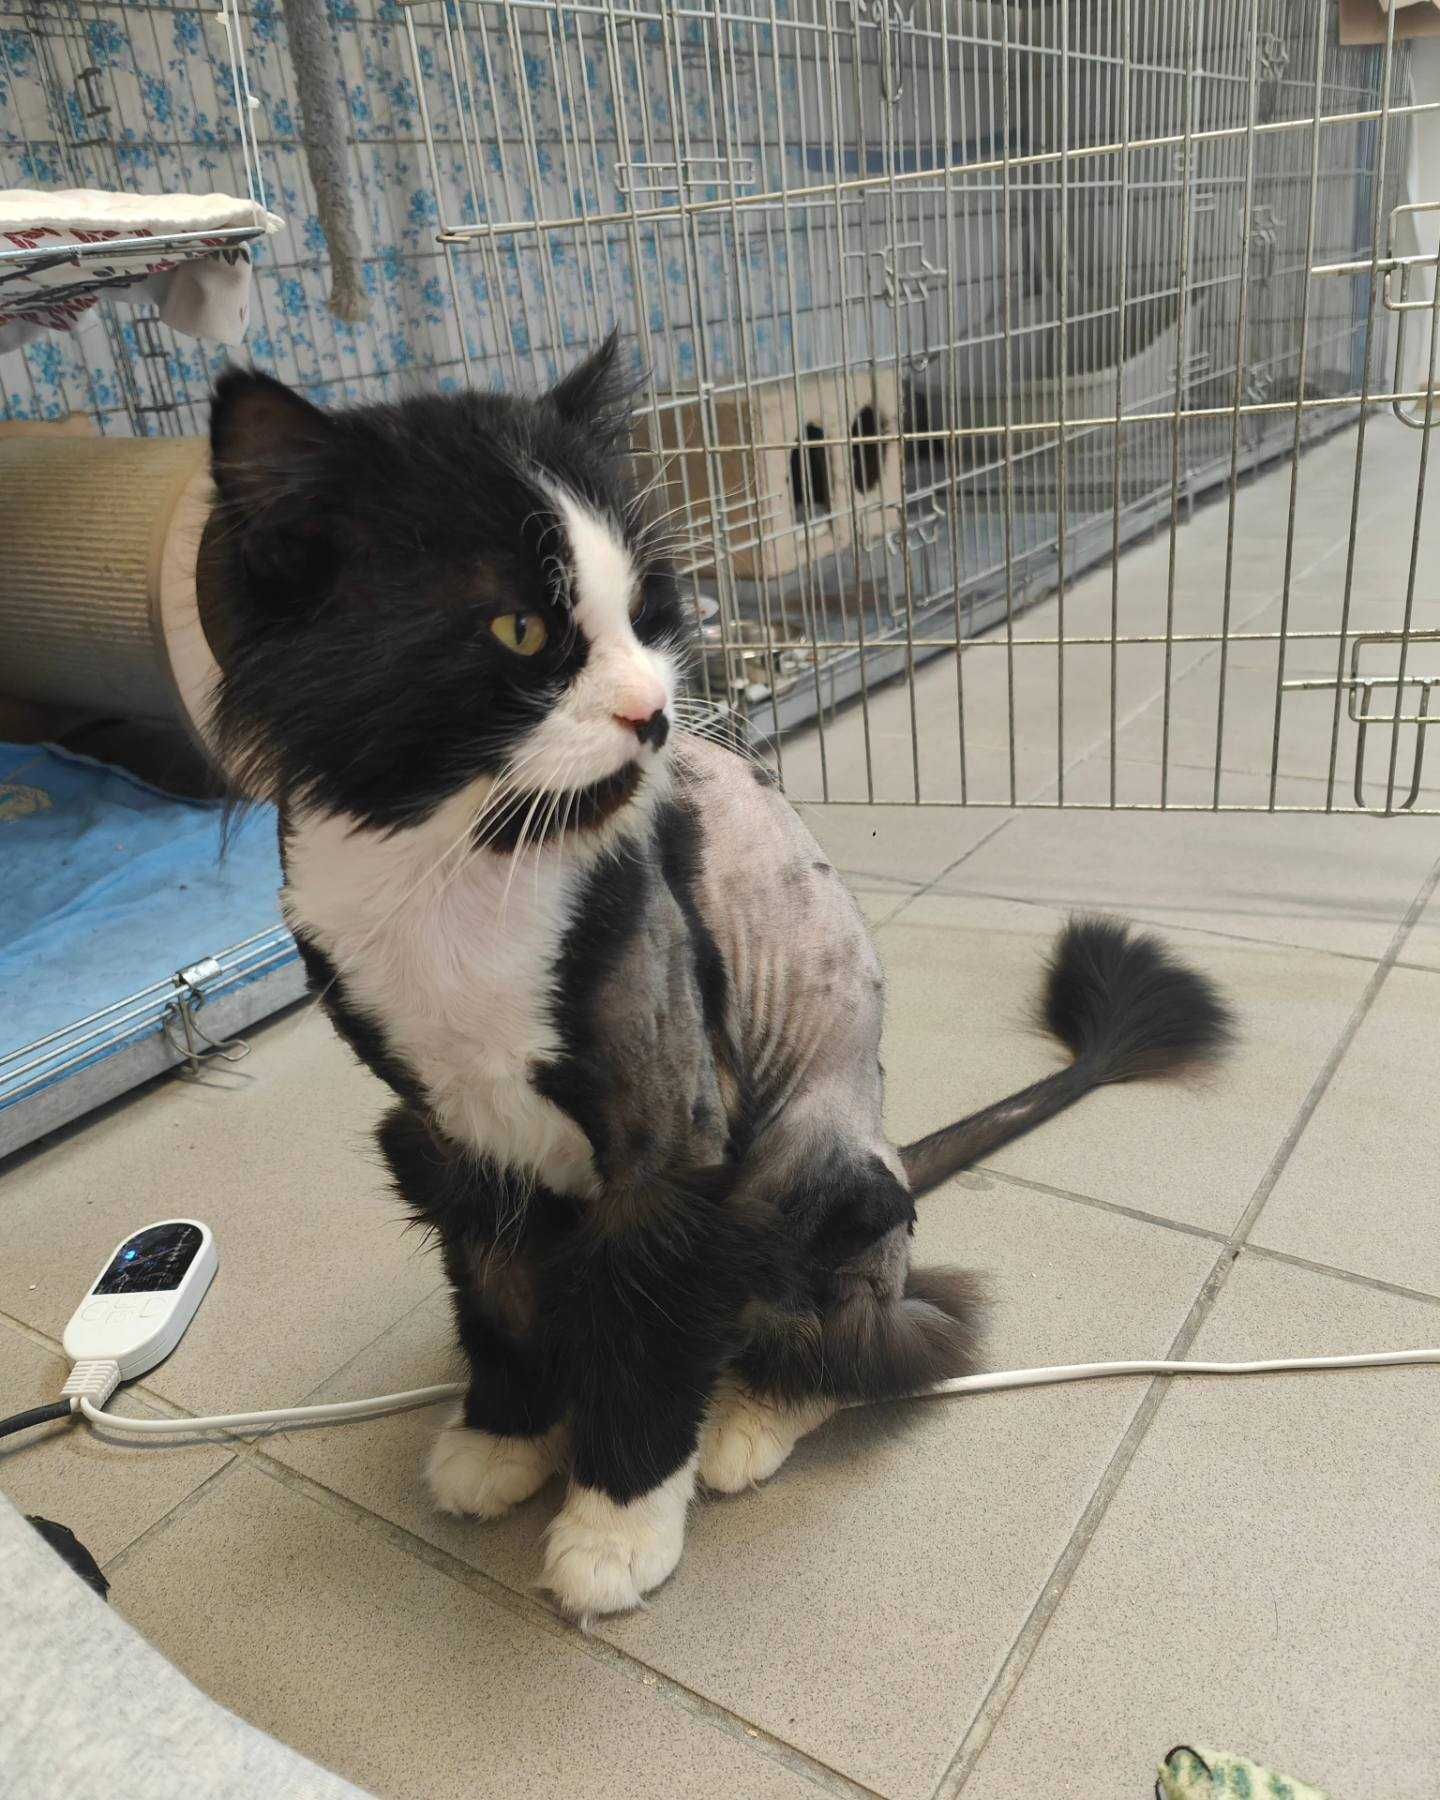 Elvis duży kot do adopcji długowłosy przyjazny wysoki postawny czarno